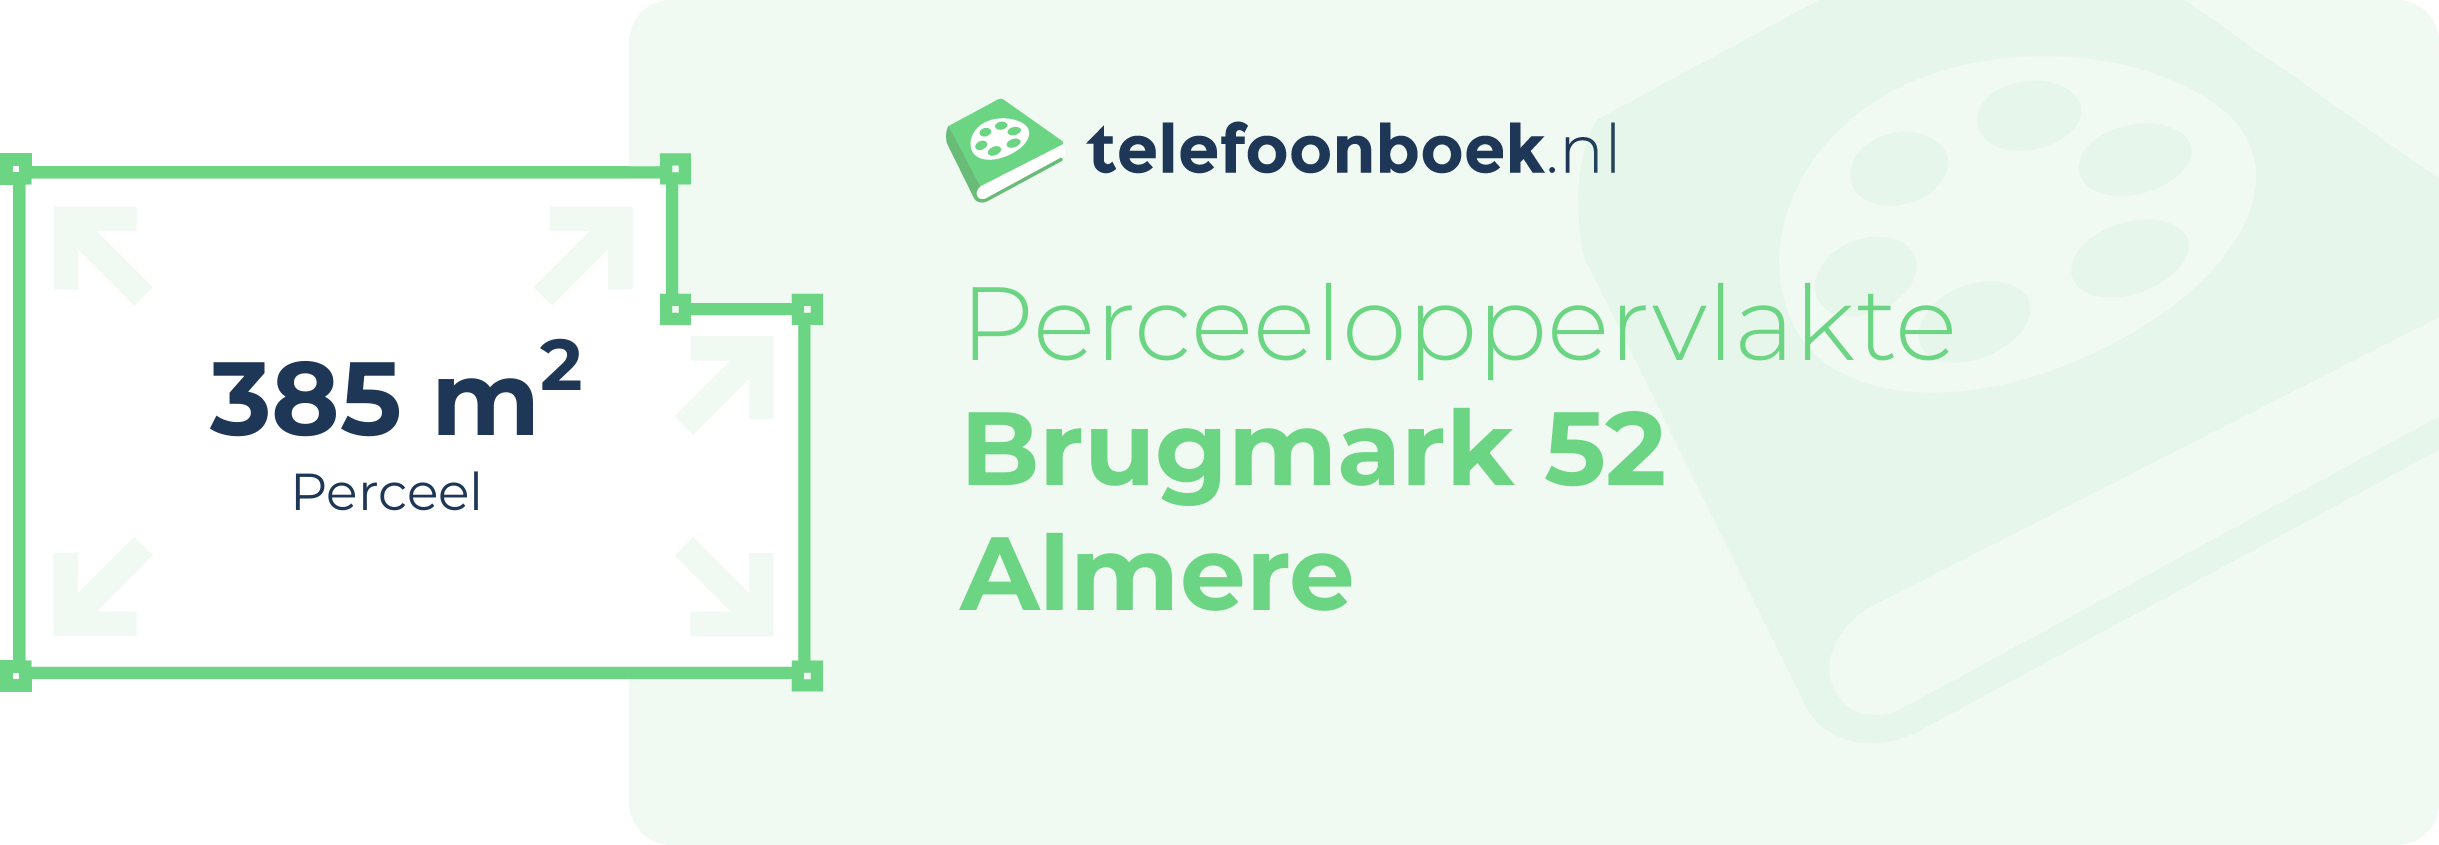 Perceeloppervlakte Brugmark 52 Almere